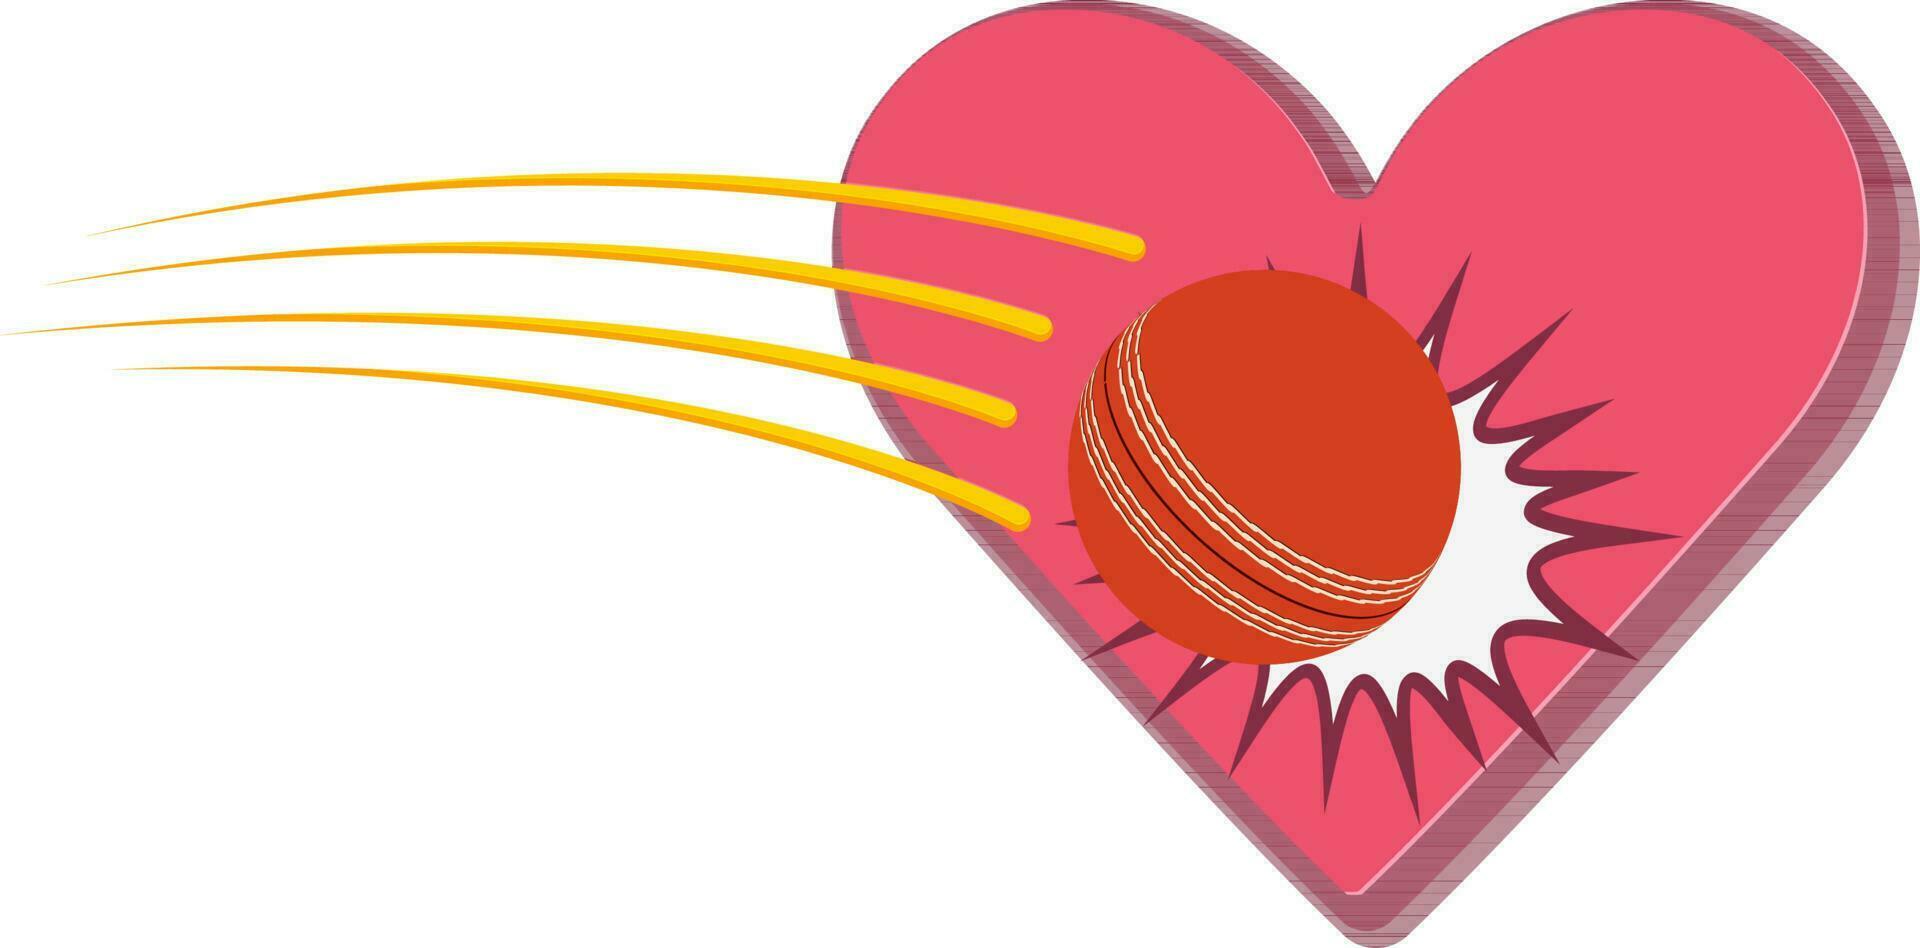 Cricket ball hitting 3D heart. vector